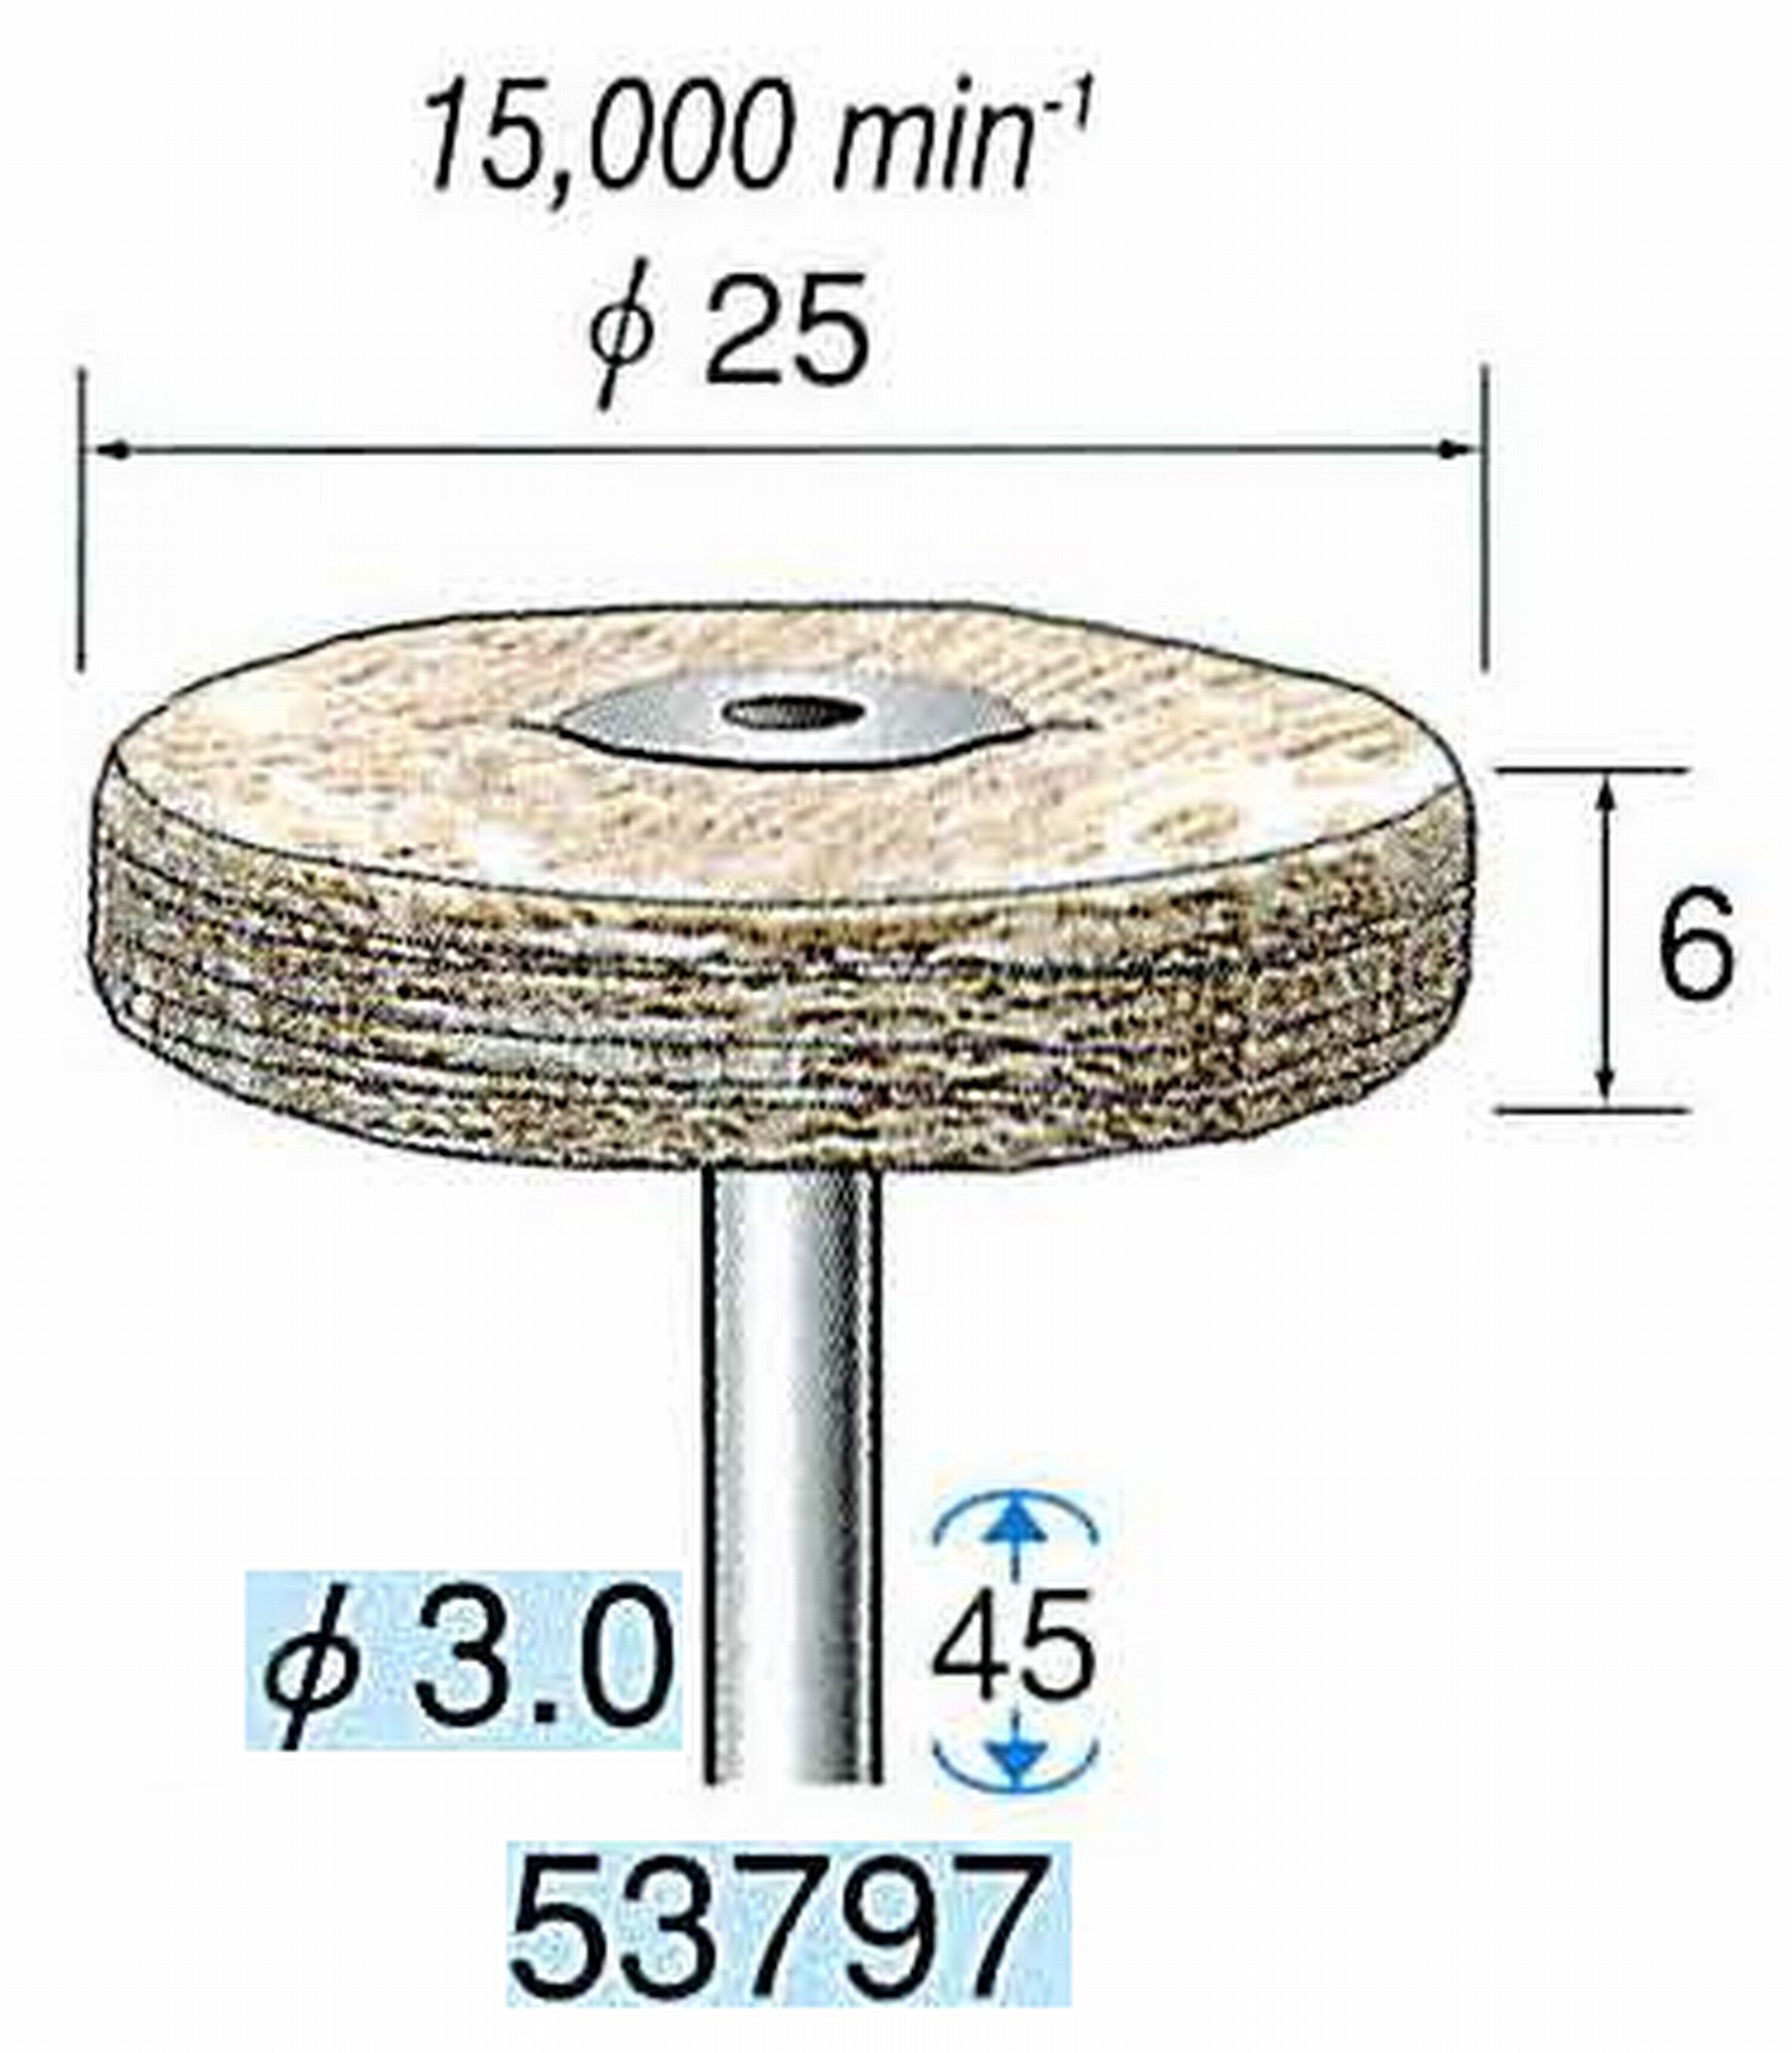 ナカニシ/NAKANISHI 積層ハードバフ 茶褐綿バフ 軸径(シャンク)φ3.0mm 53797